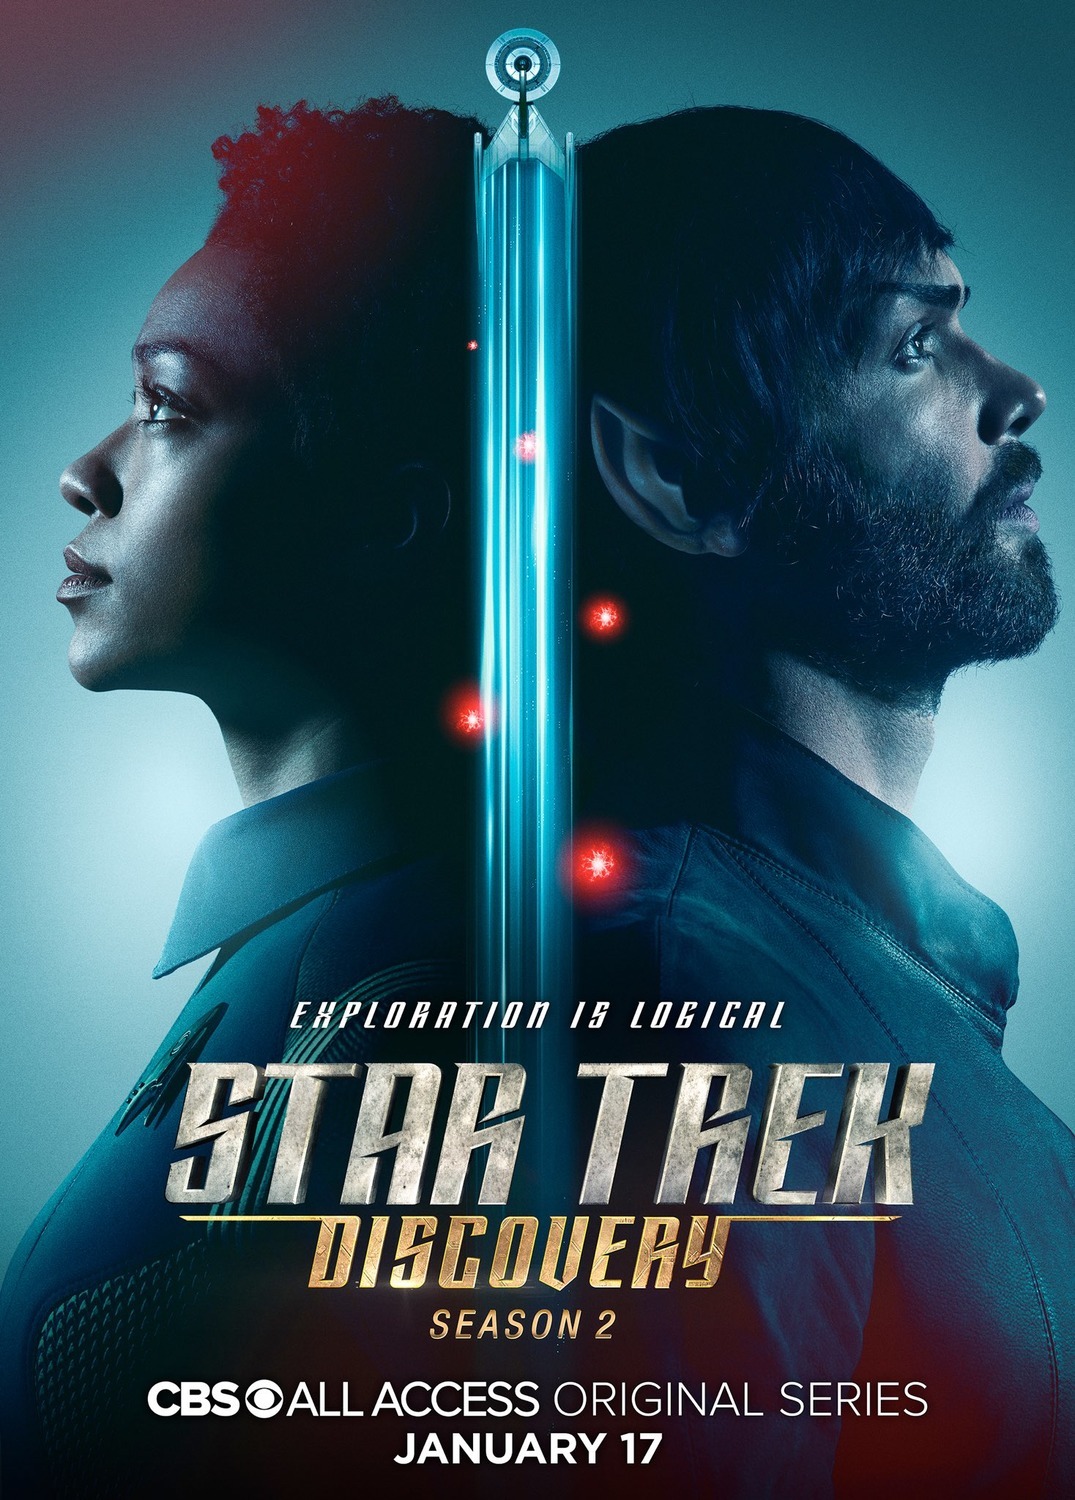 ดูหนังออนไลน์ Star Trek Discovery Season 2 EP.10 สตาร์ เทรค ดิสคัฟเวอรี่ ซีซั่นที่ 2 ตอนที่ 10